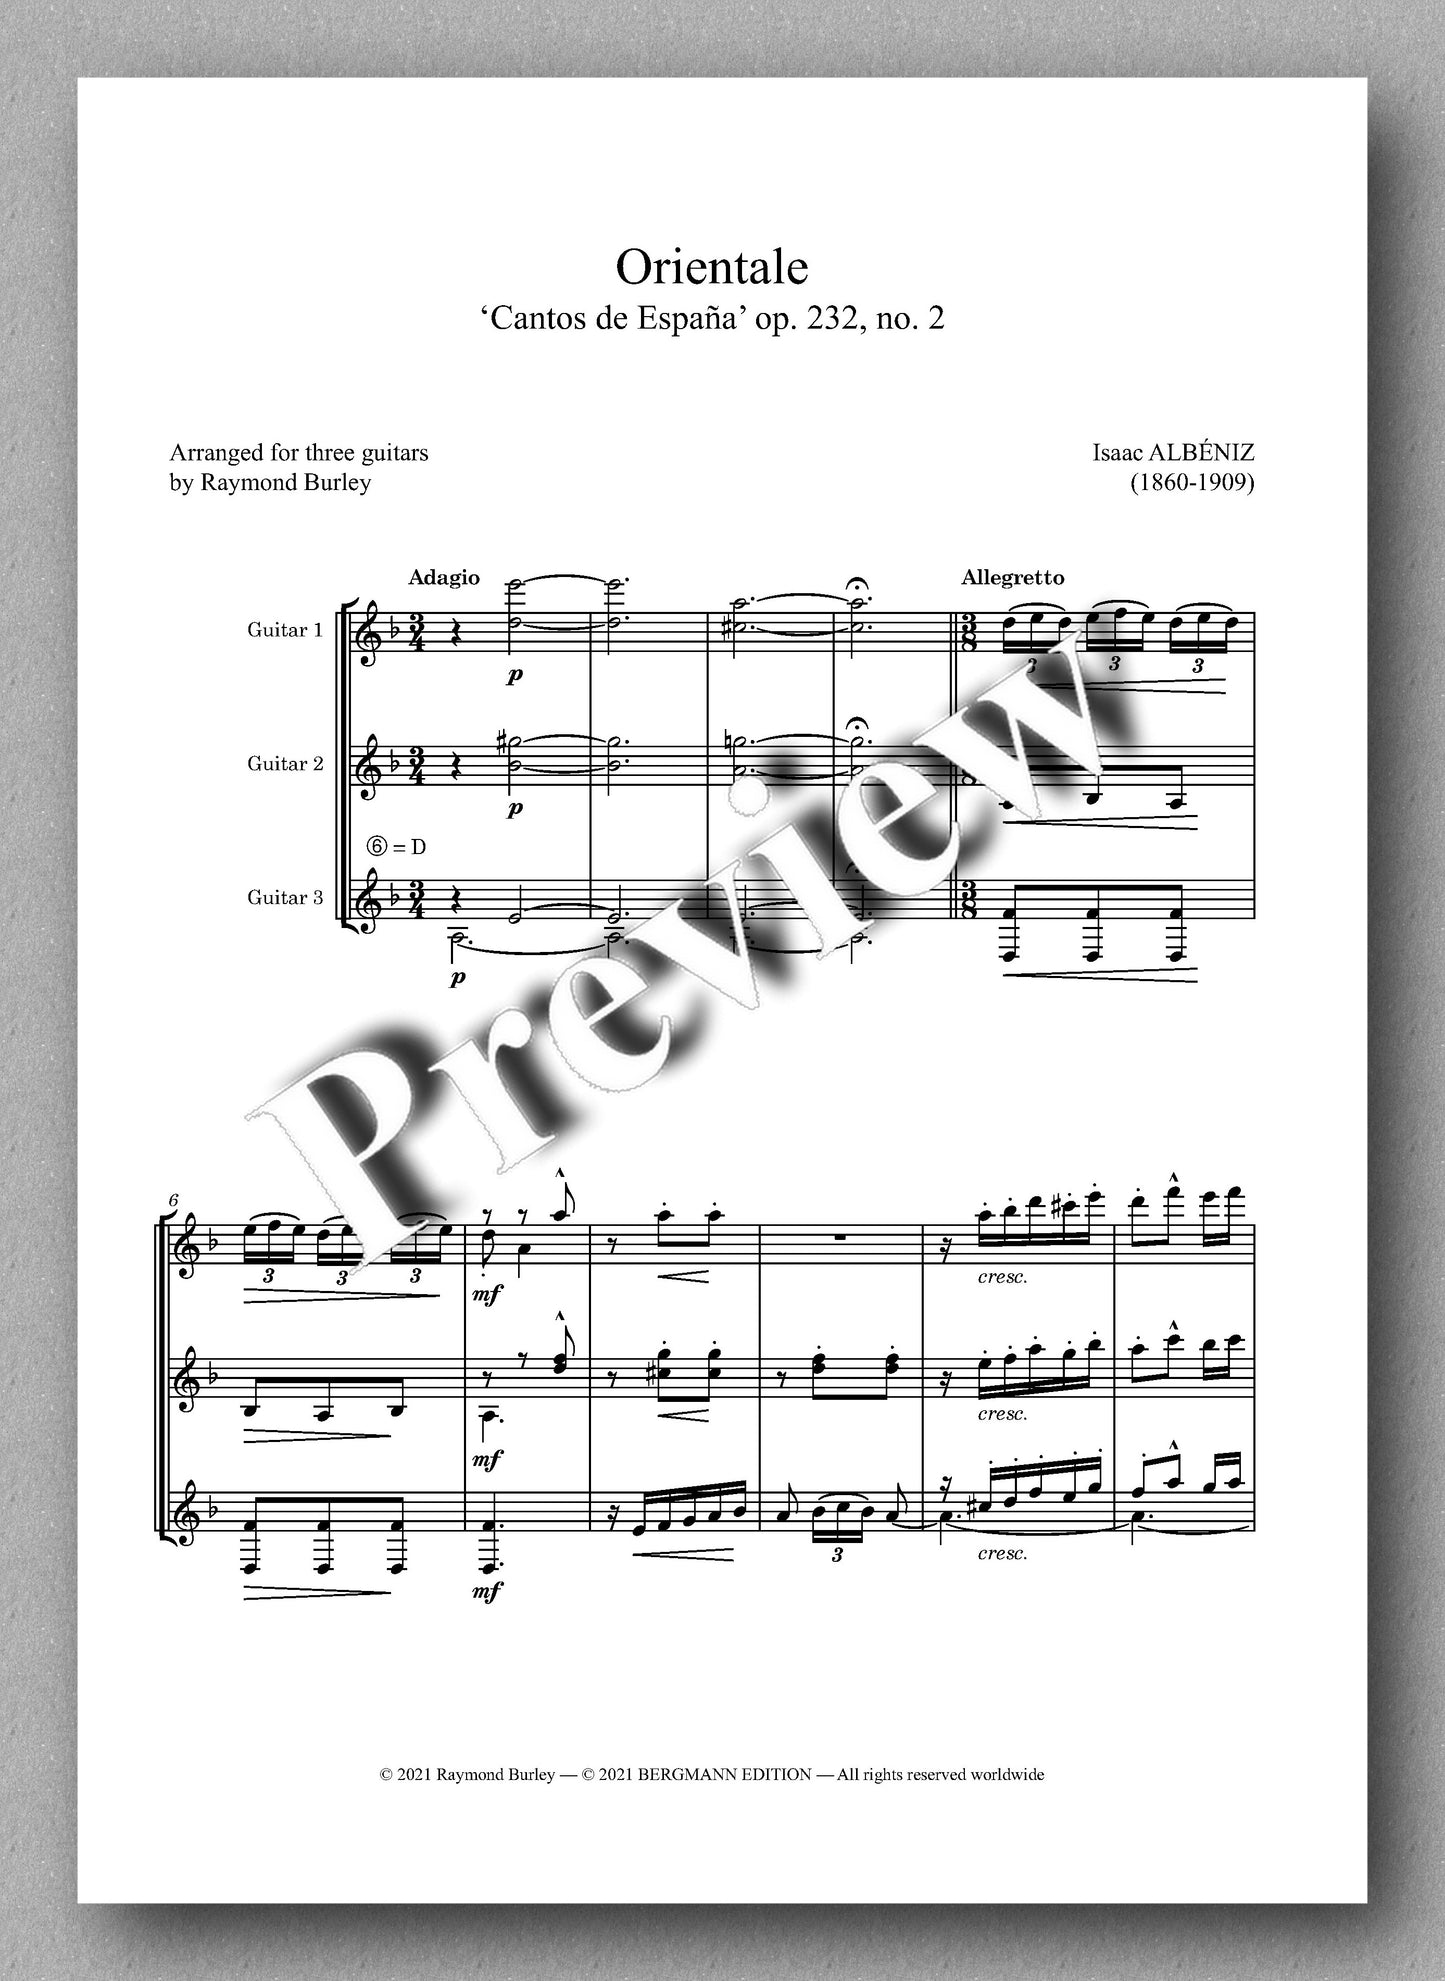 Albéniz-Burley, Orientale - music score 1